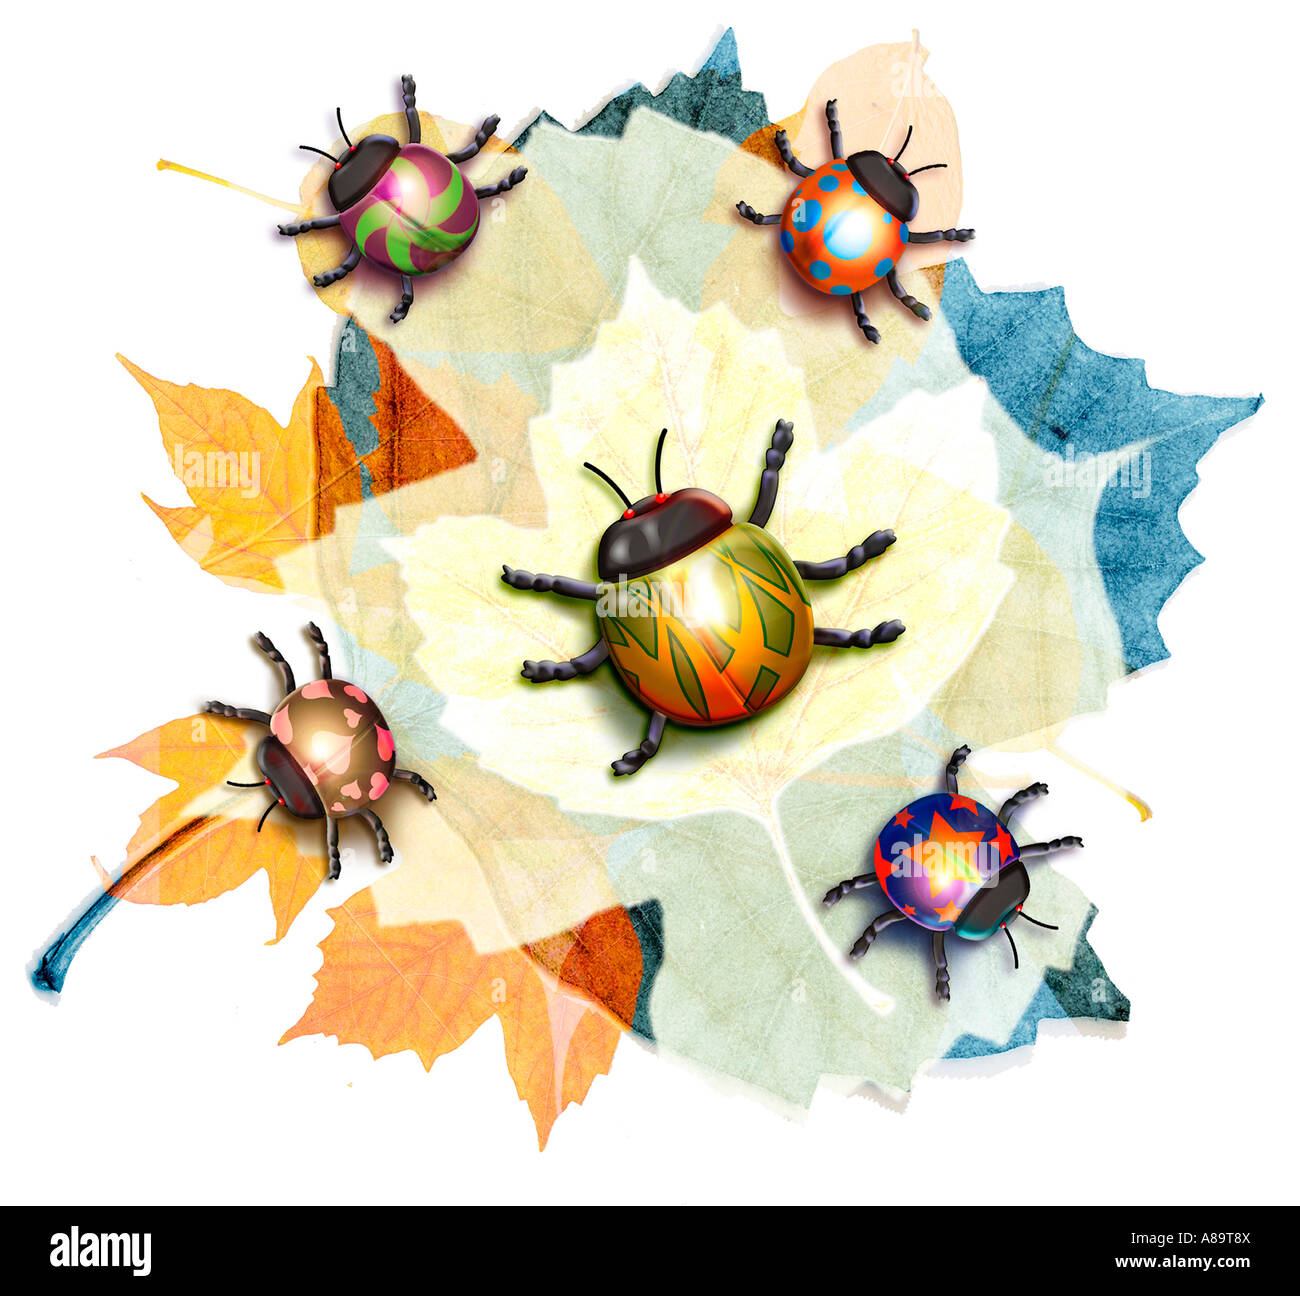 Ladybug illustration Stock Photo